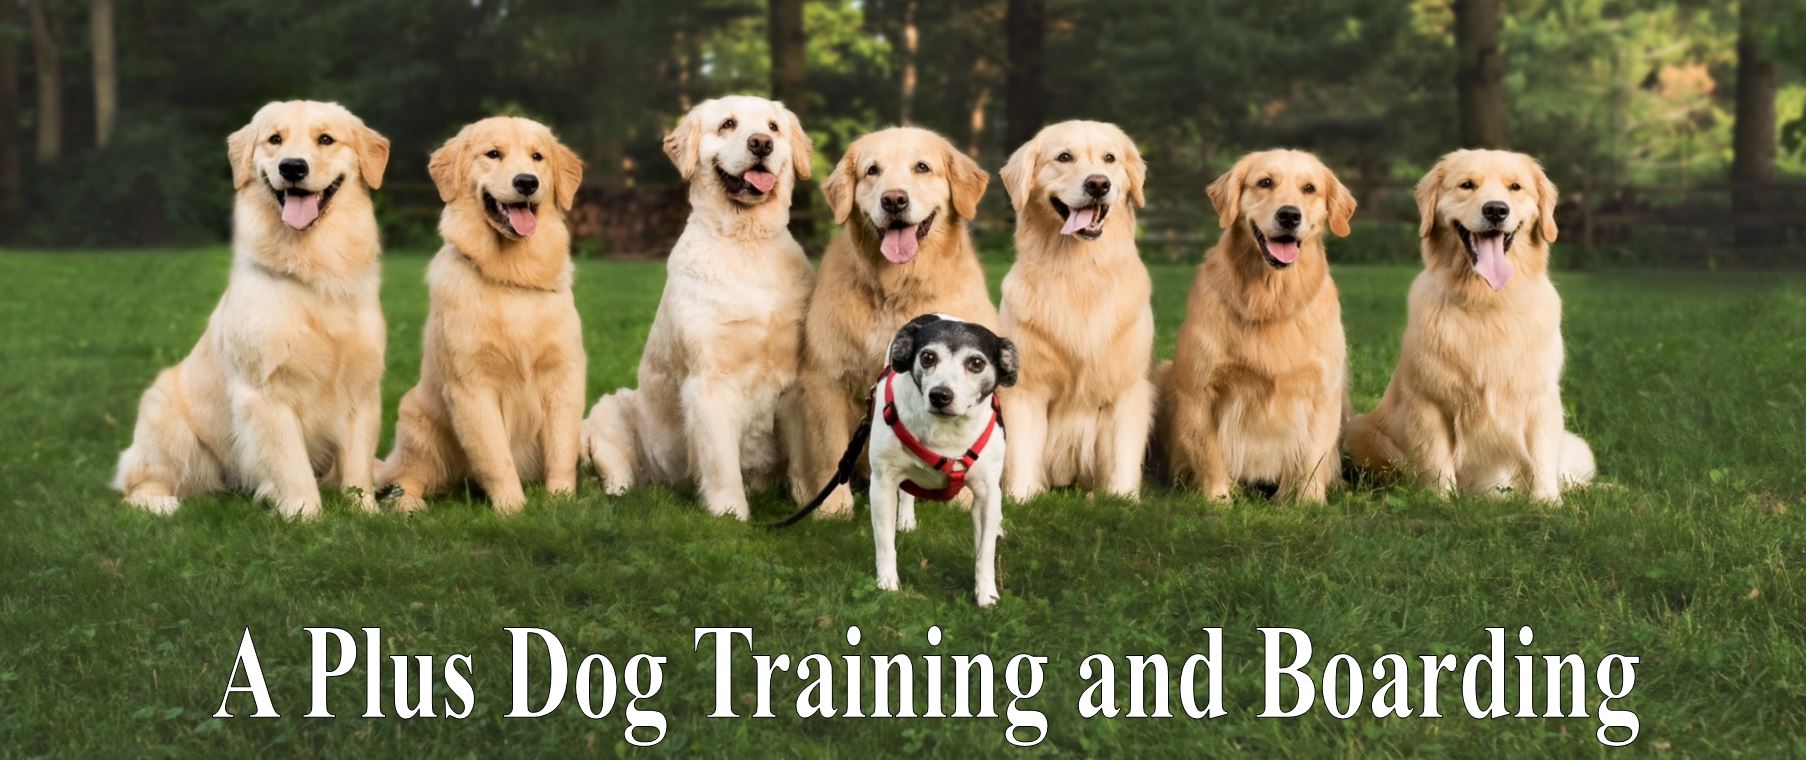 A Plus Dog Boarding & Training